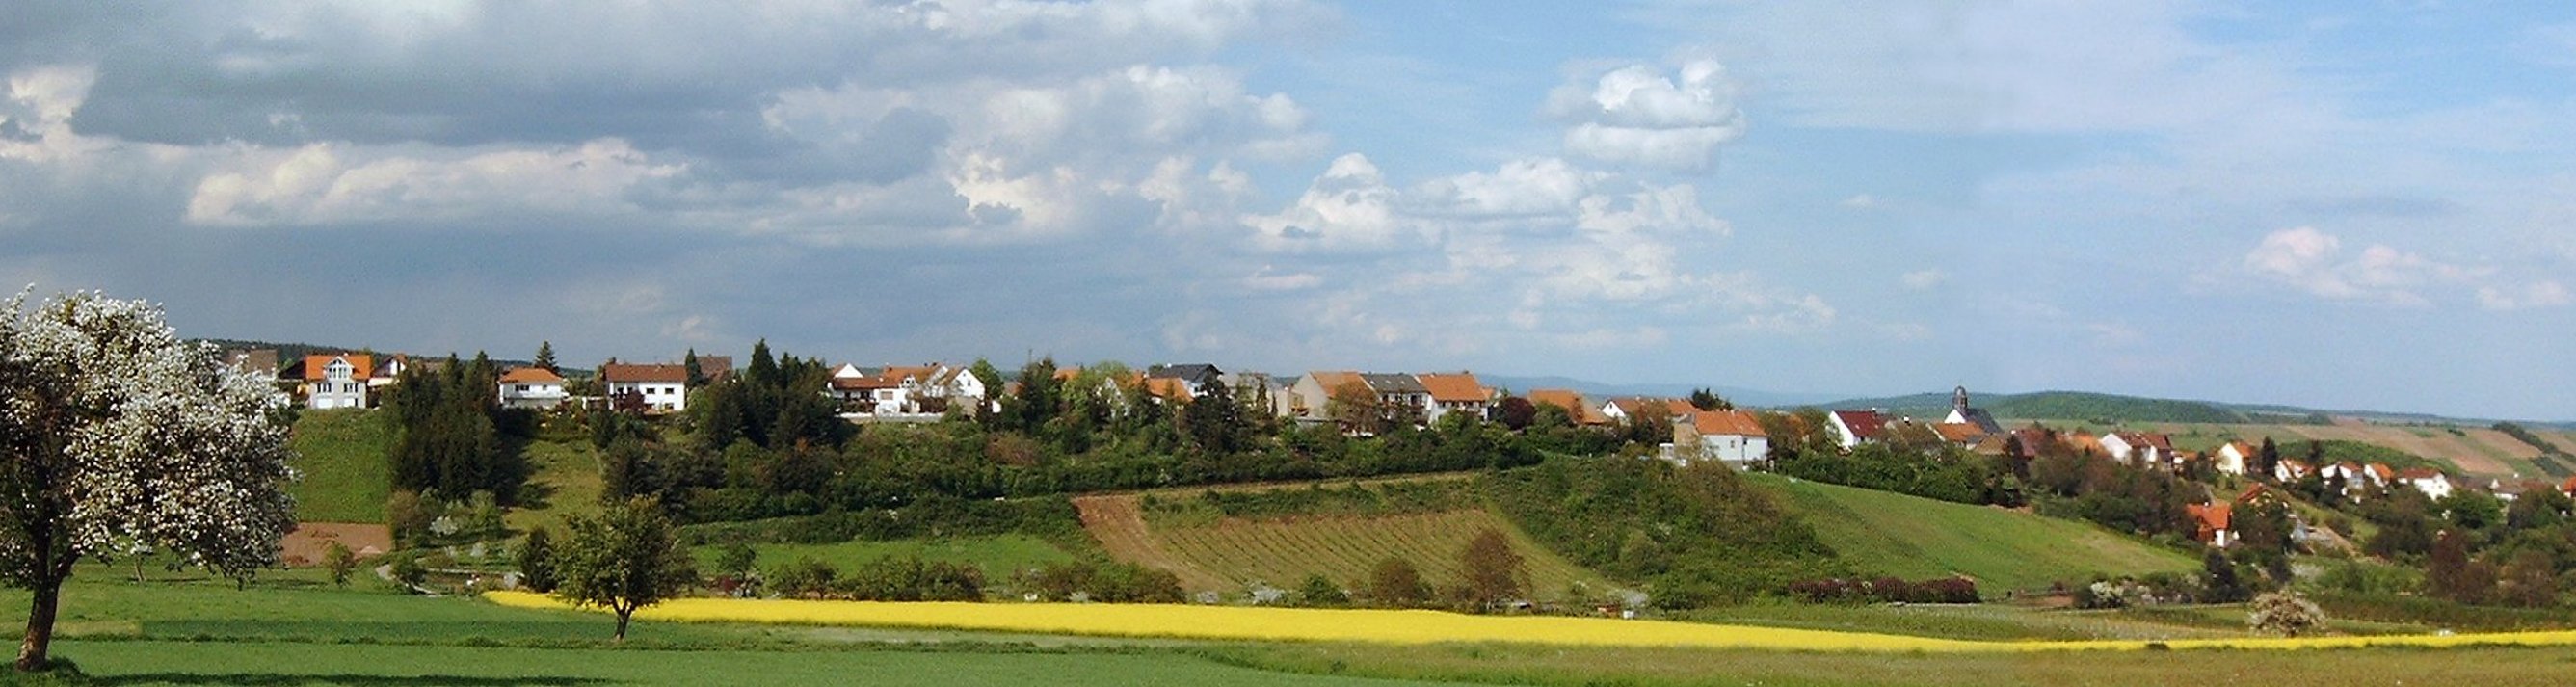 Braunweiler | Verbandsgemeinde Rüdesheim